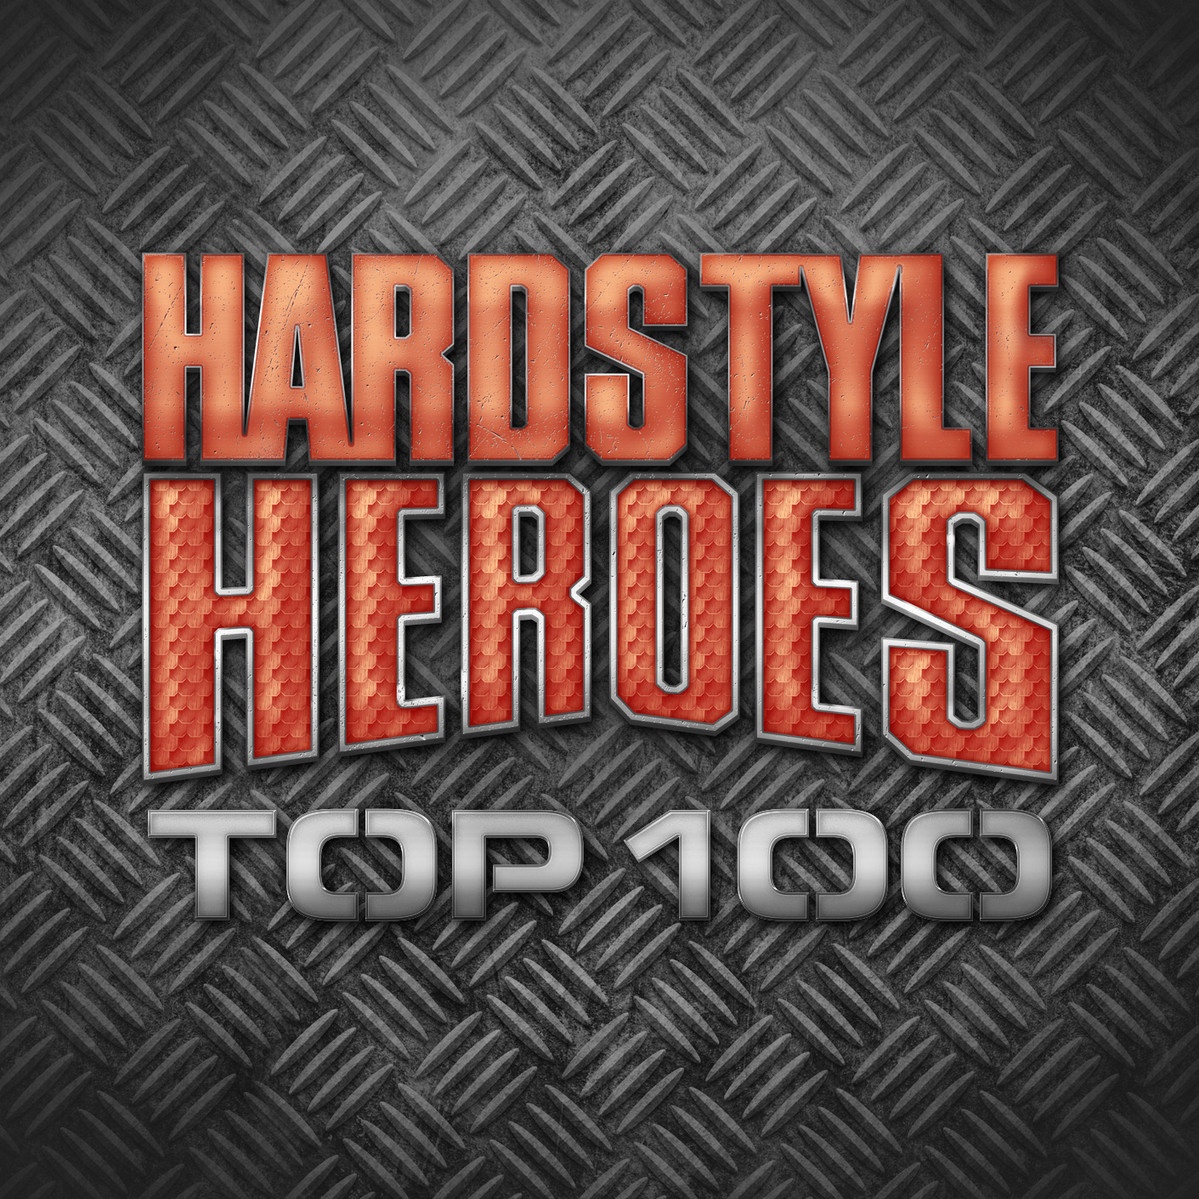 Hardstyle Heroes Top 100 CD2